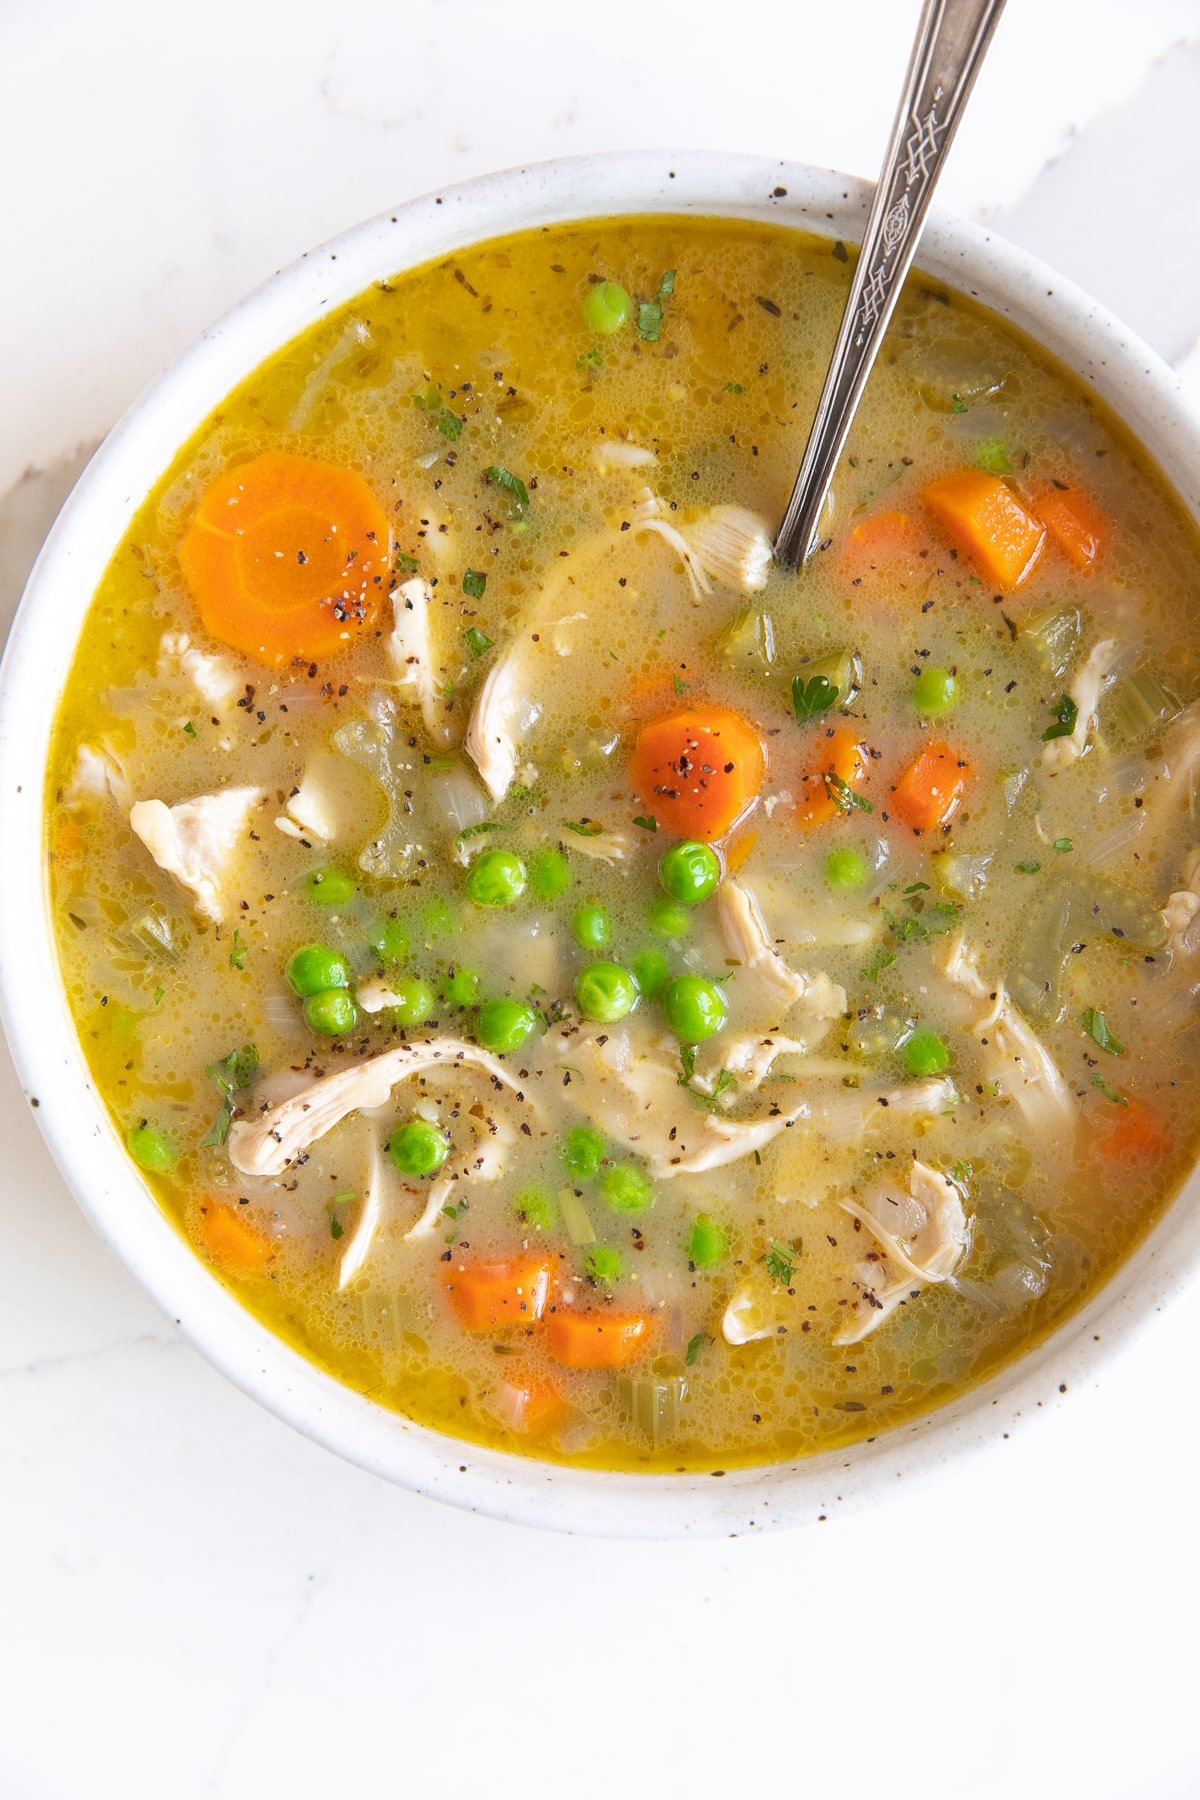 Ciotola di zuppa bianca poco profonda riempita con zuppa di orzo di pollo al limone ripiena di pollo grattugiato, carote, sedano, orzo e piselli.